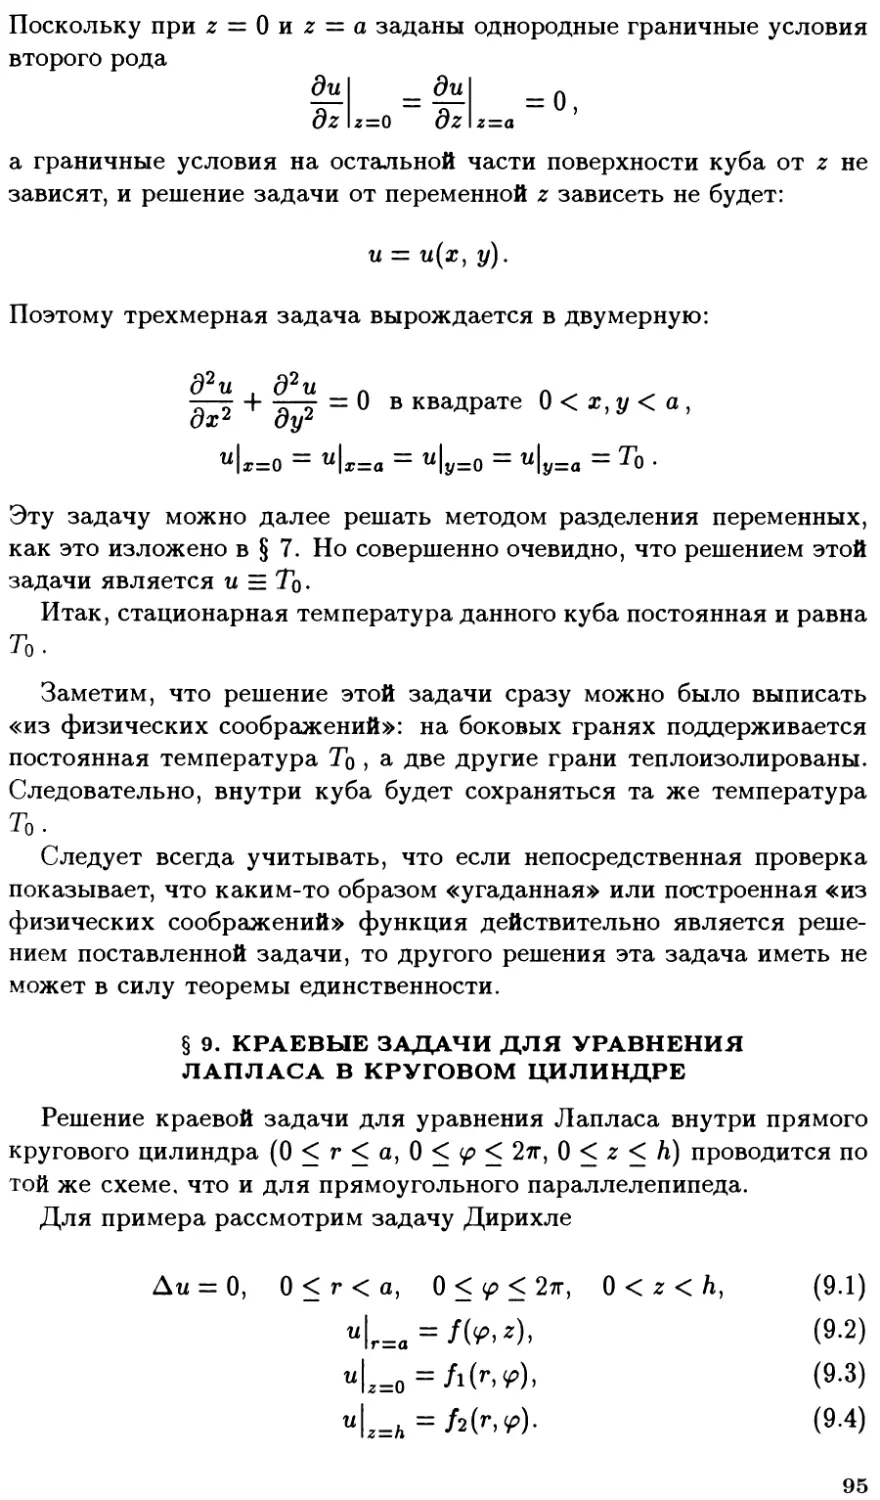 §9. Краевые задачи для уравнения Лапласа в круговом цилиндре